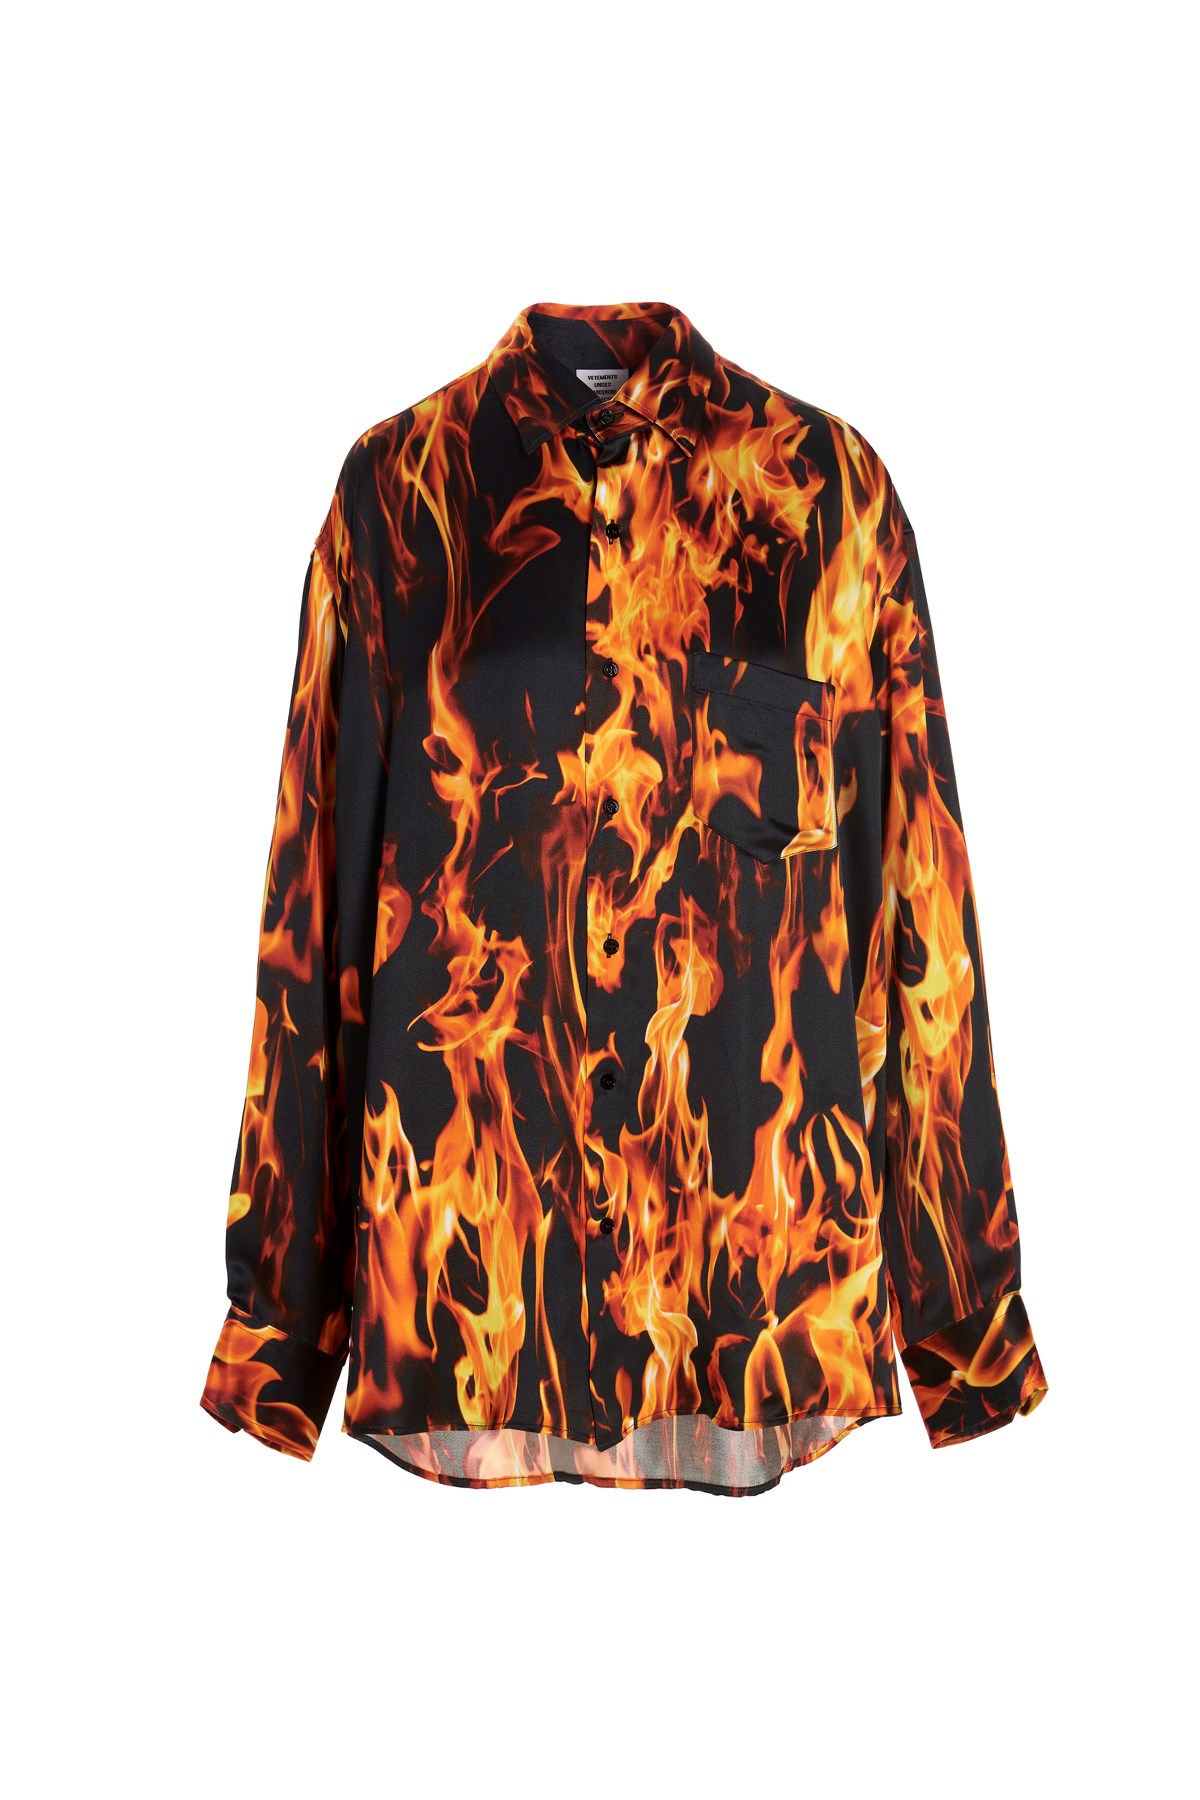 VETEMENTS 'Fire’ Shirt